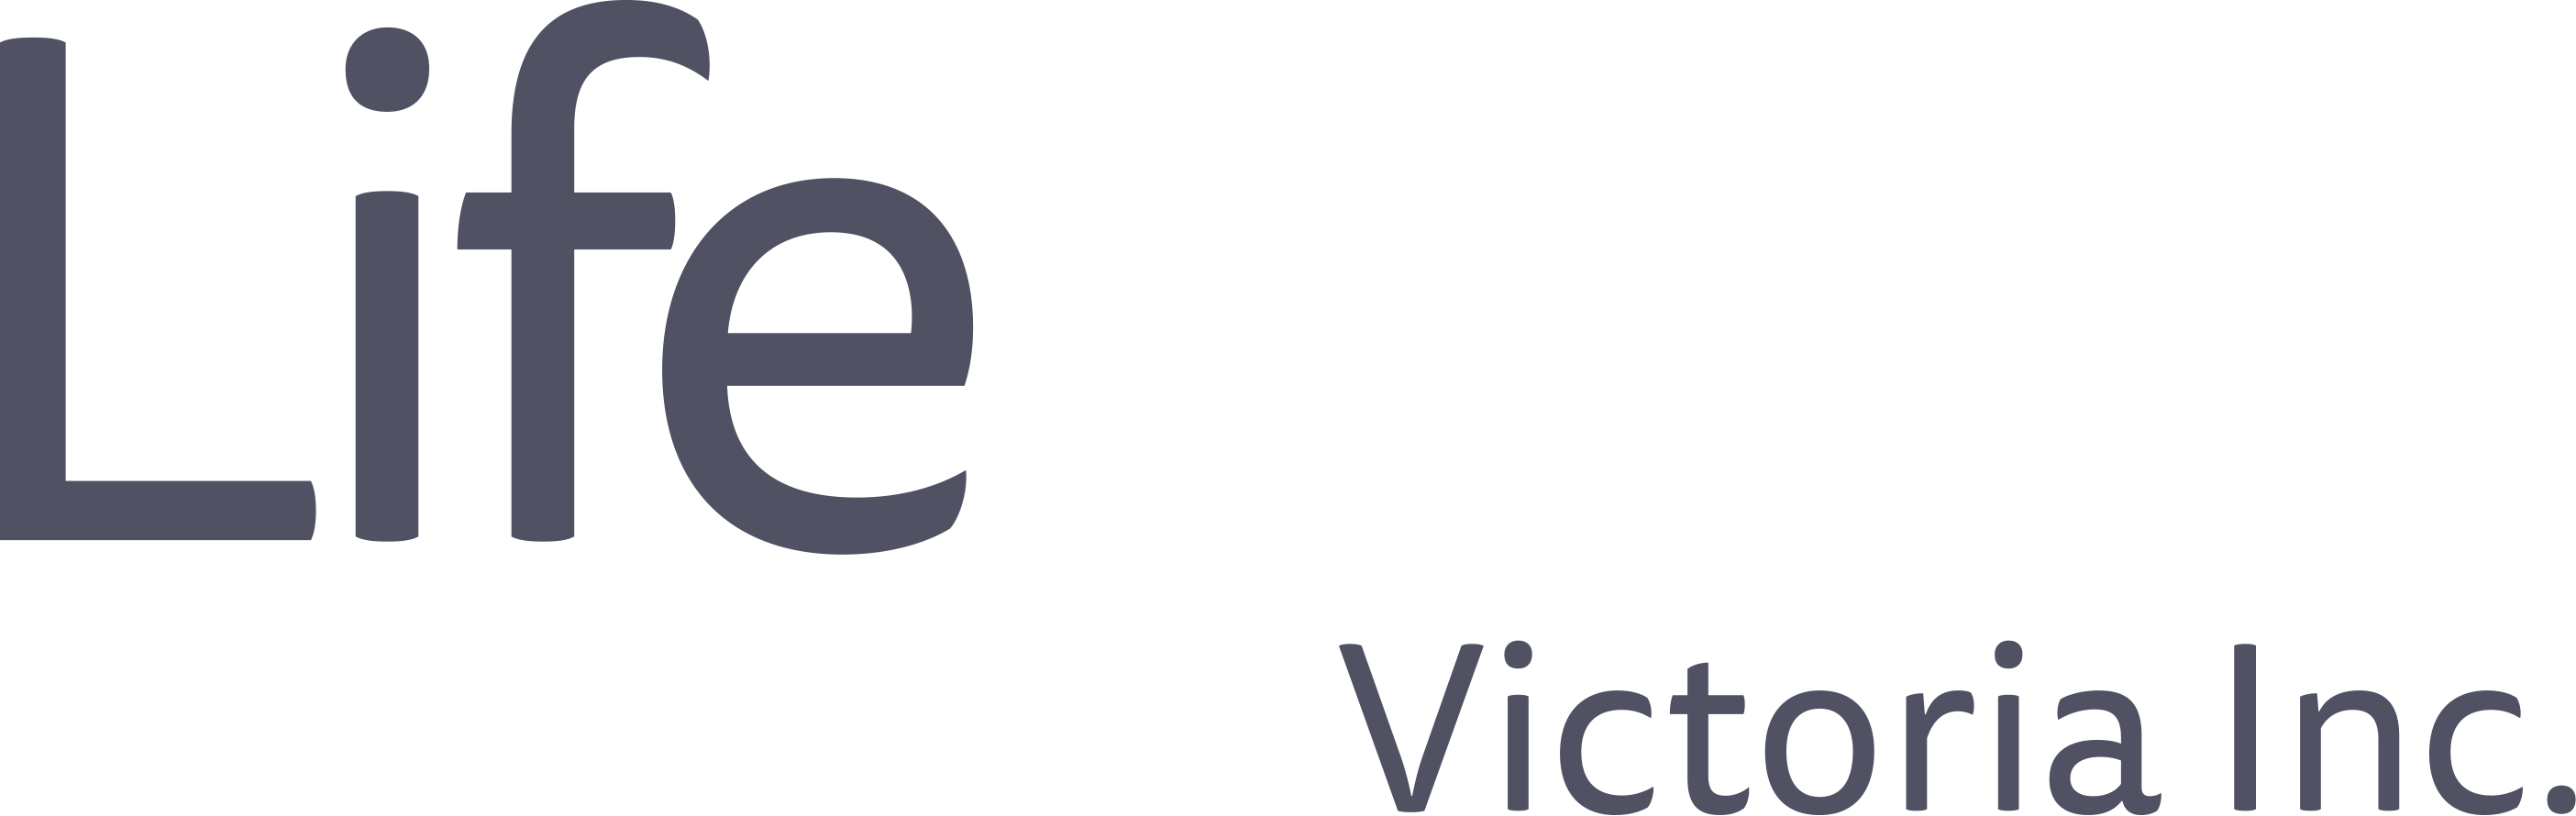 Life Skills Victoria Inc. Reversed Logo